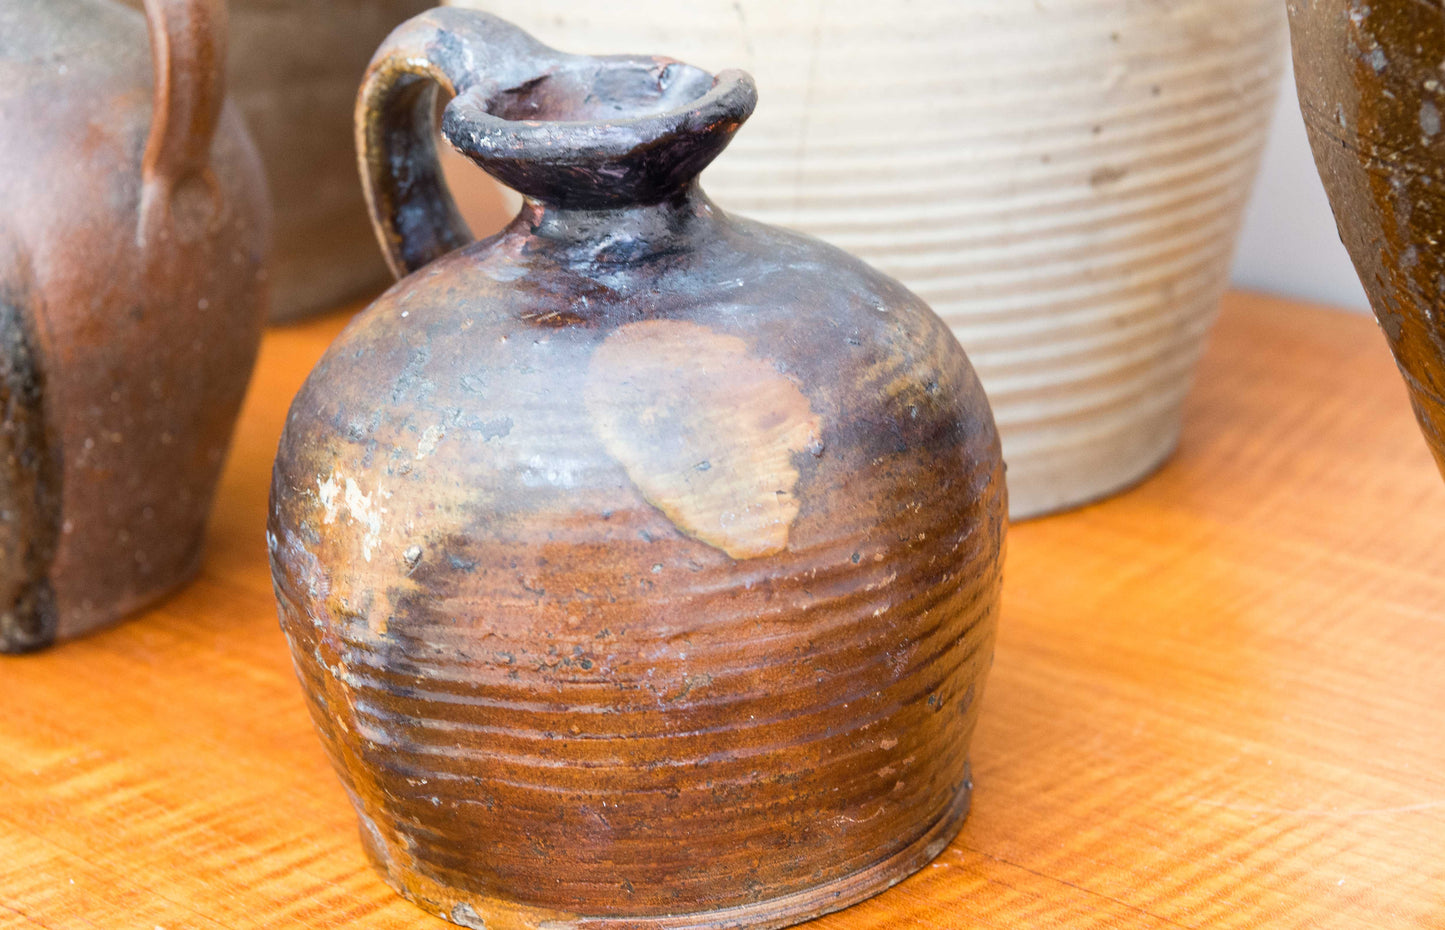 Five Antique Salt Glaze Stoneware Flagon,Jugs